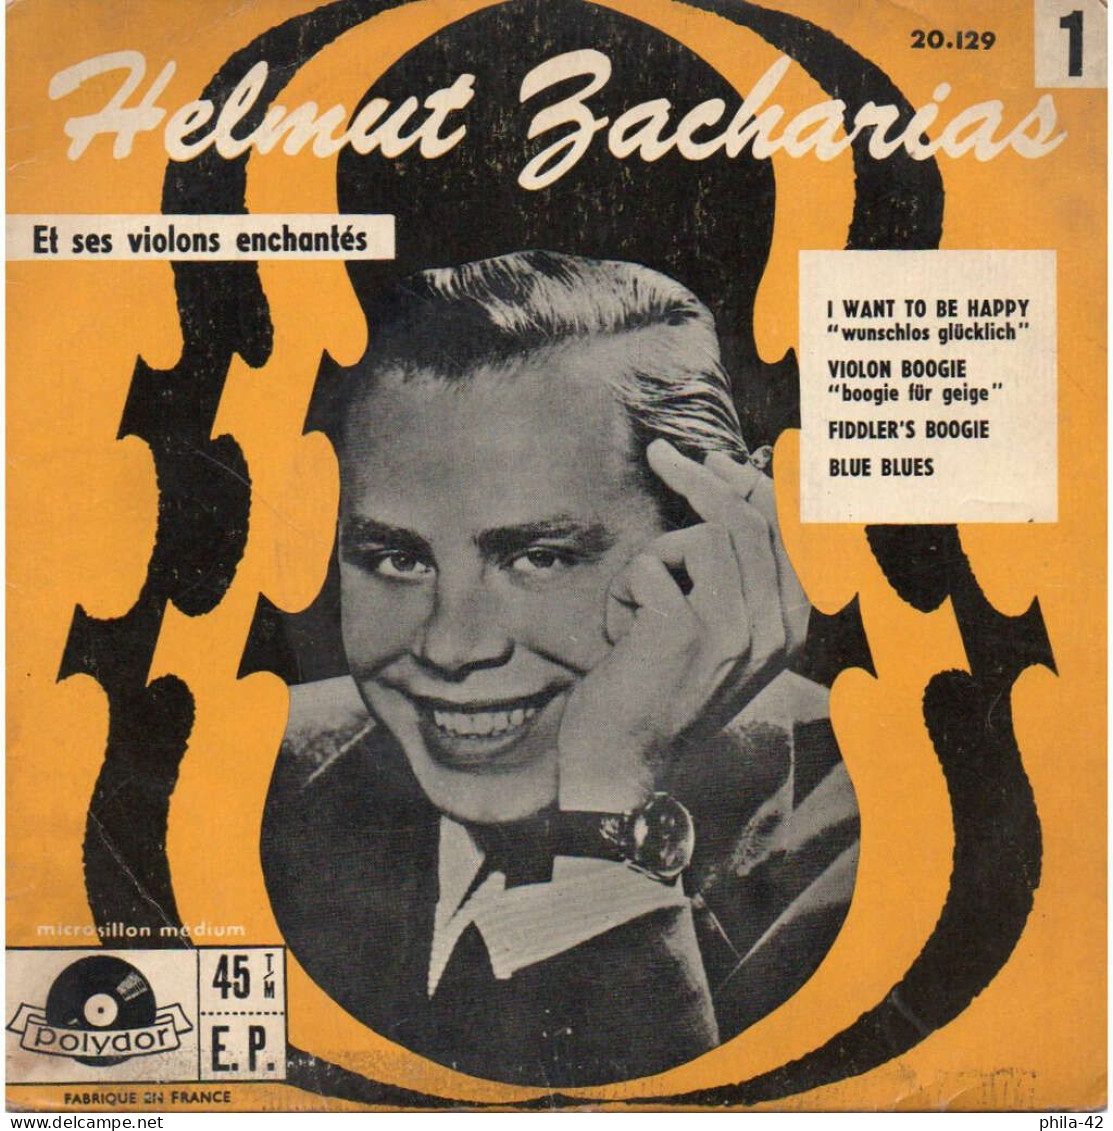 Helmut Zacharias Et Ses Violons Enchantés - Vinyle 45 Tours 1958 - Polydor N° 20.129 - Classica